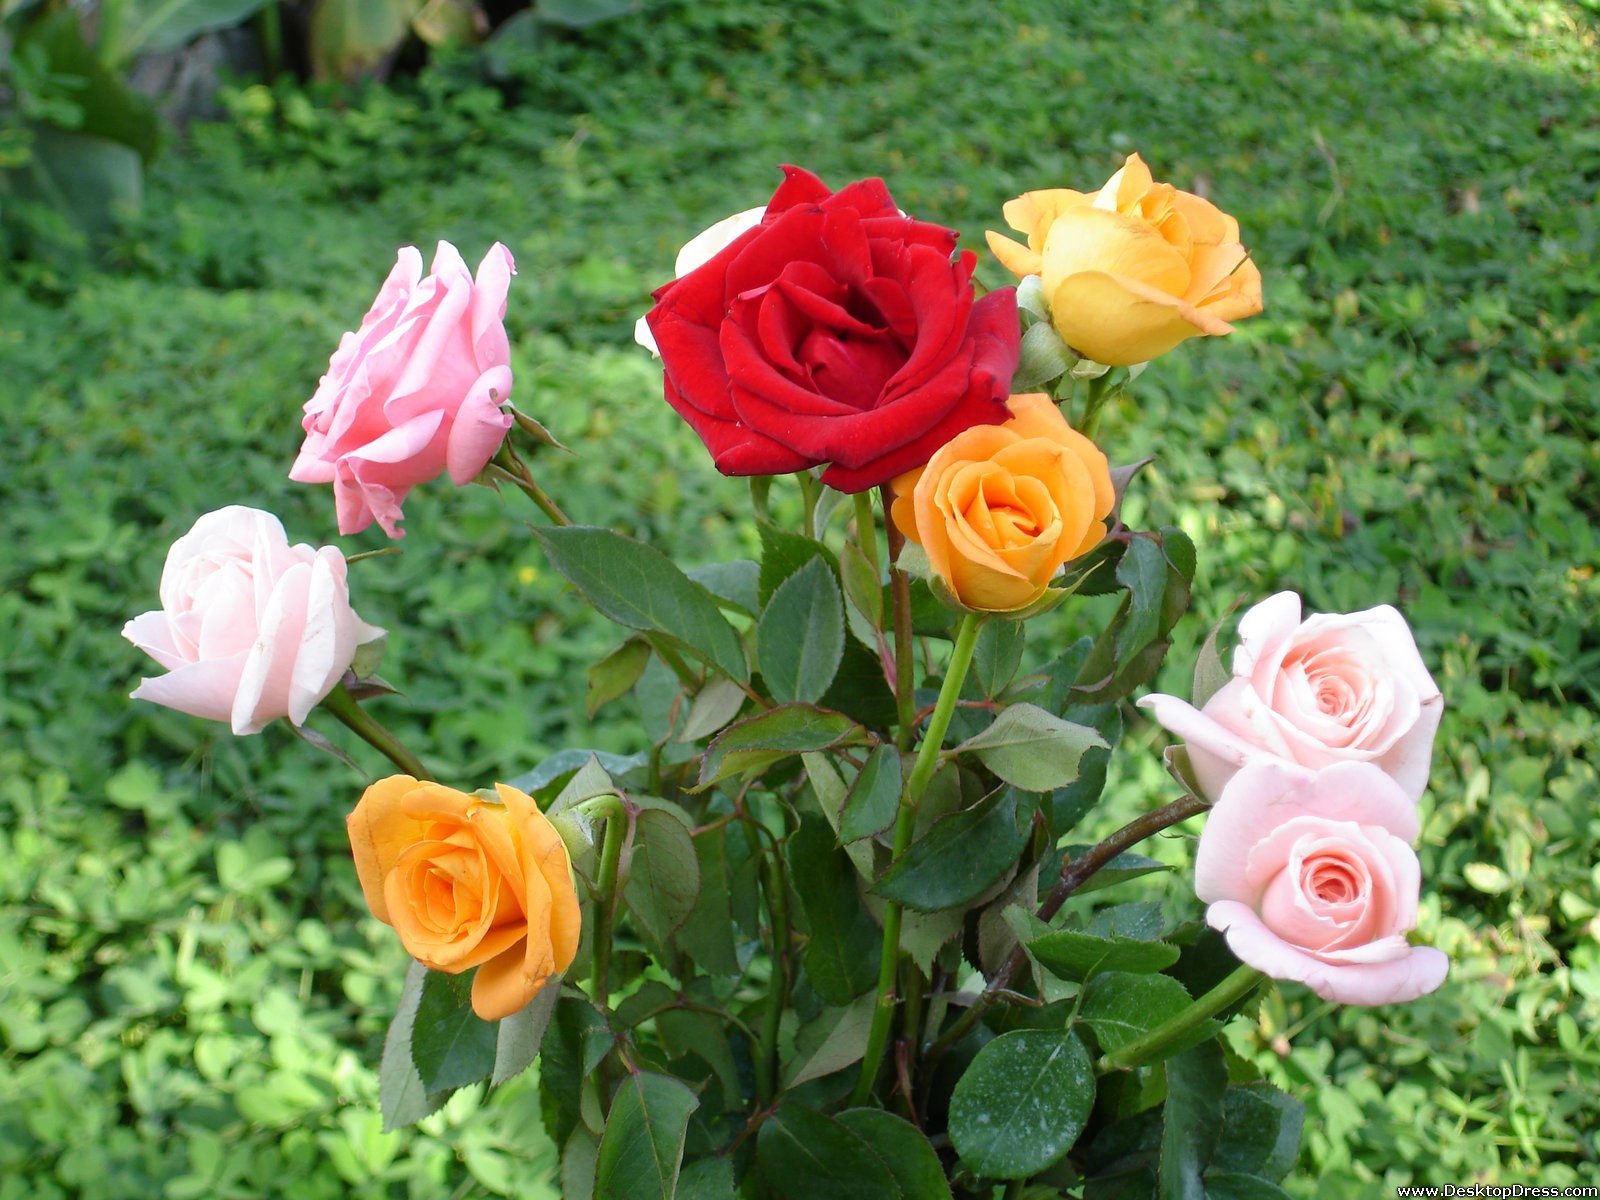 sfondi rosa di tutti i colori,fiore,pianta fiorita,julia child rose,rose da giardino,floribunda